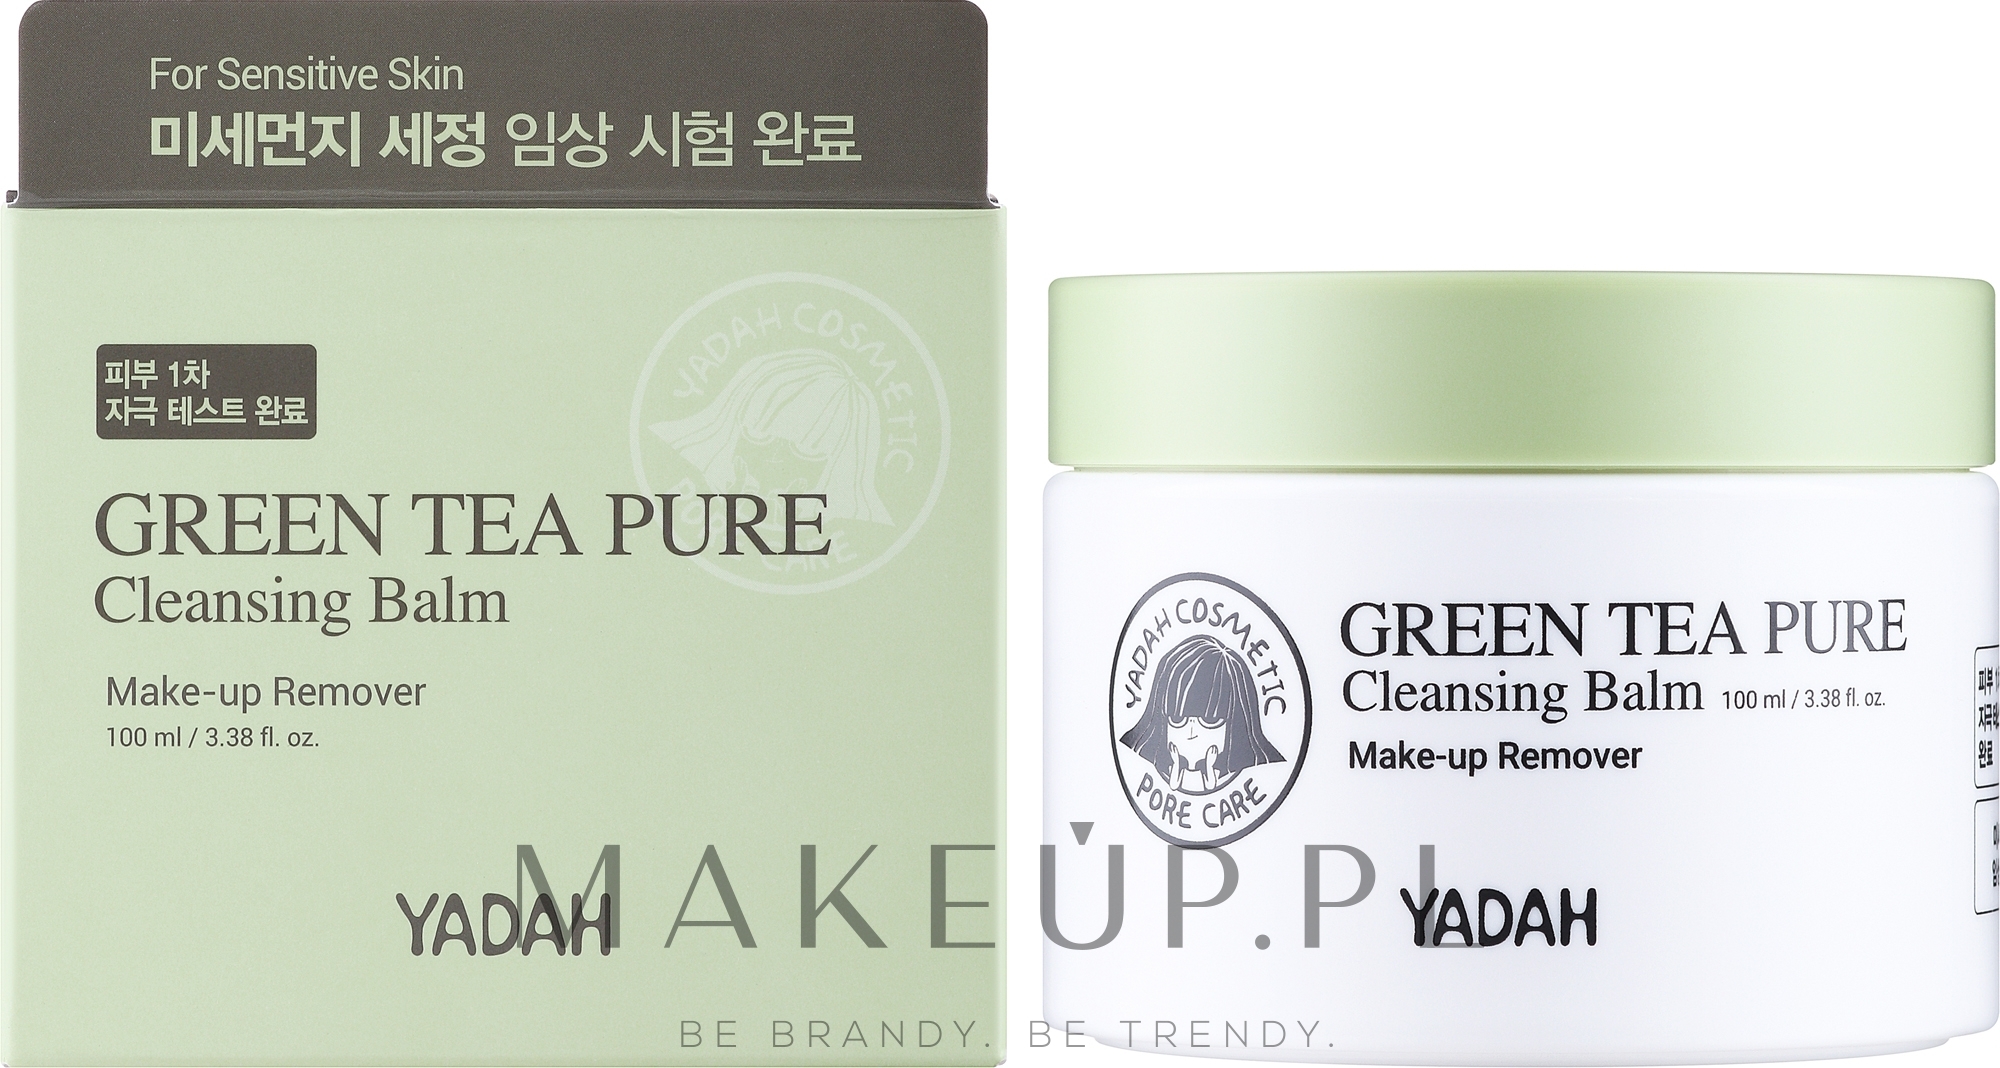 Oczyszczający balsam do twarzy z zieloną herbatą - Yadah Green Tea Pure Cleansing Balm — Zdjęcie 100 ml